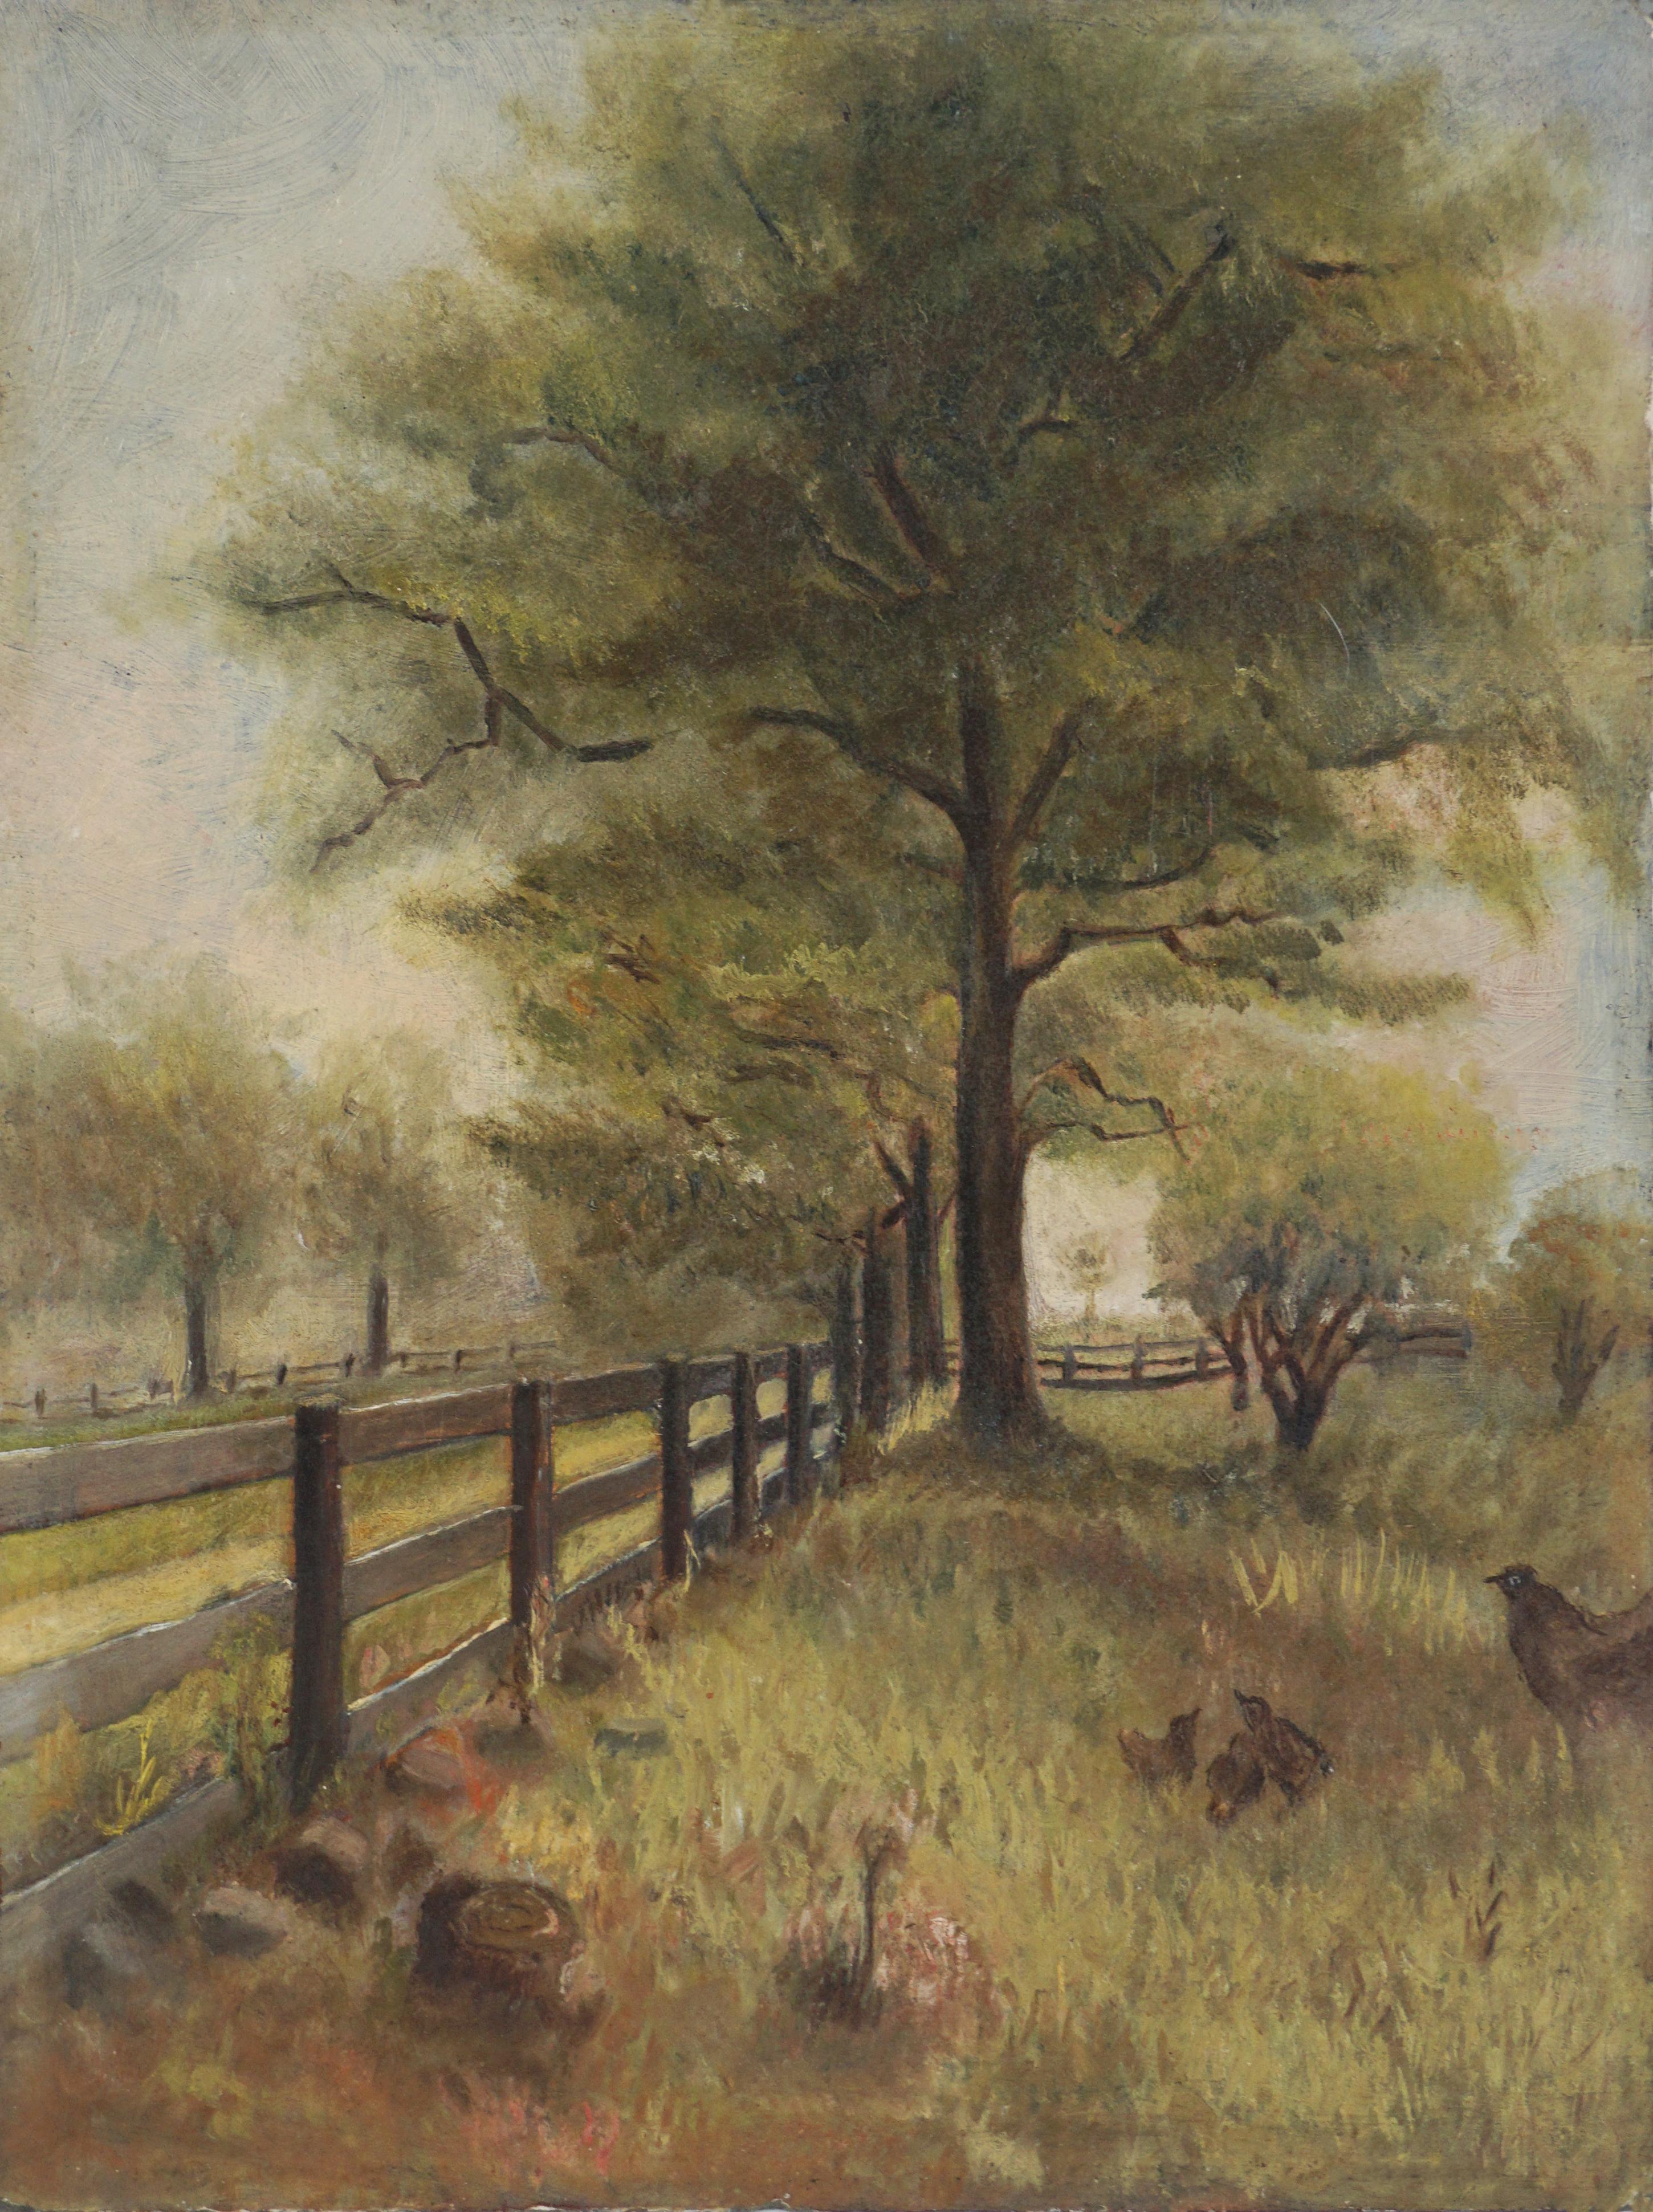 Animal Painting Unknown - Début du 19e siècle  Paysage de campagne dans le style de William Morris Hunt